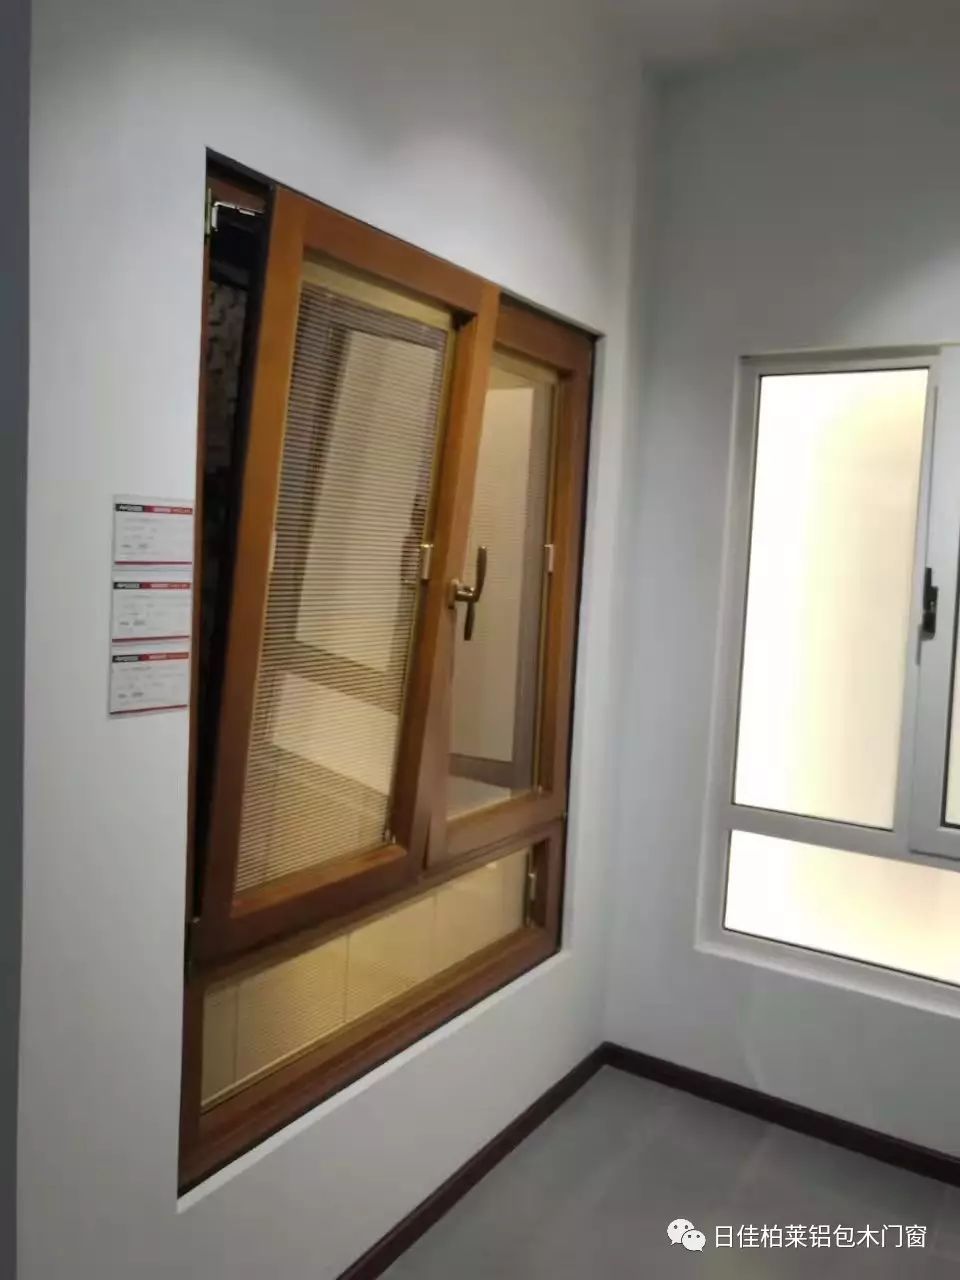 铝包木门窗是一种崭新的设计思维和模式